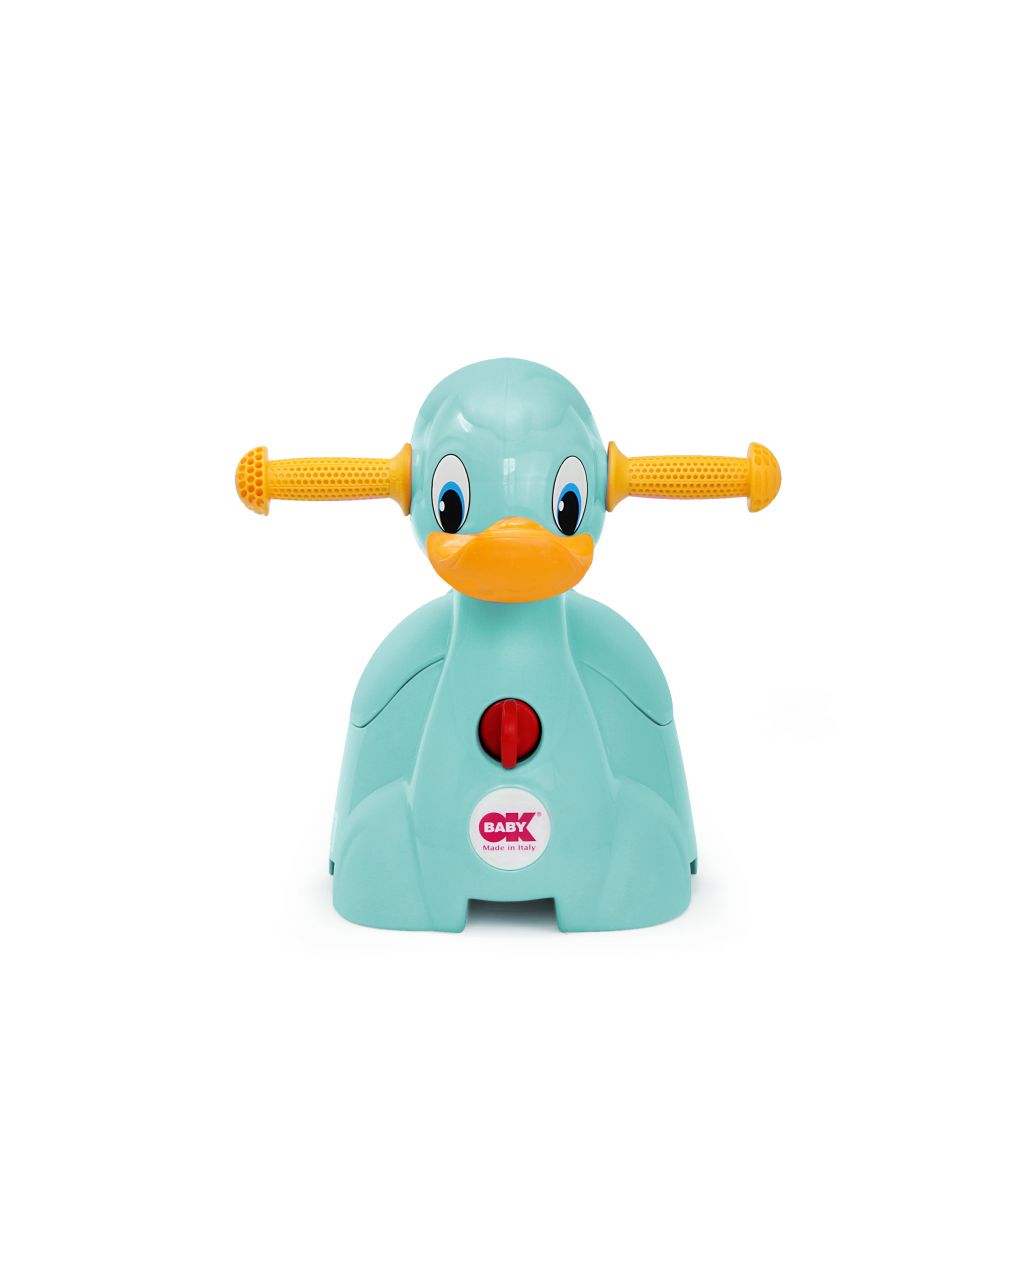 Orinal quack celeste - ok baby - OK BABY